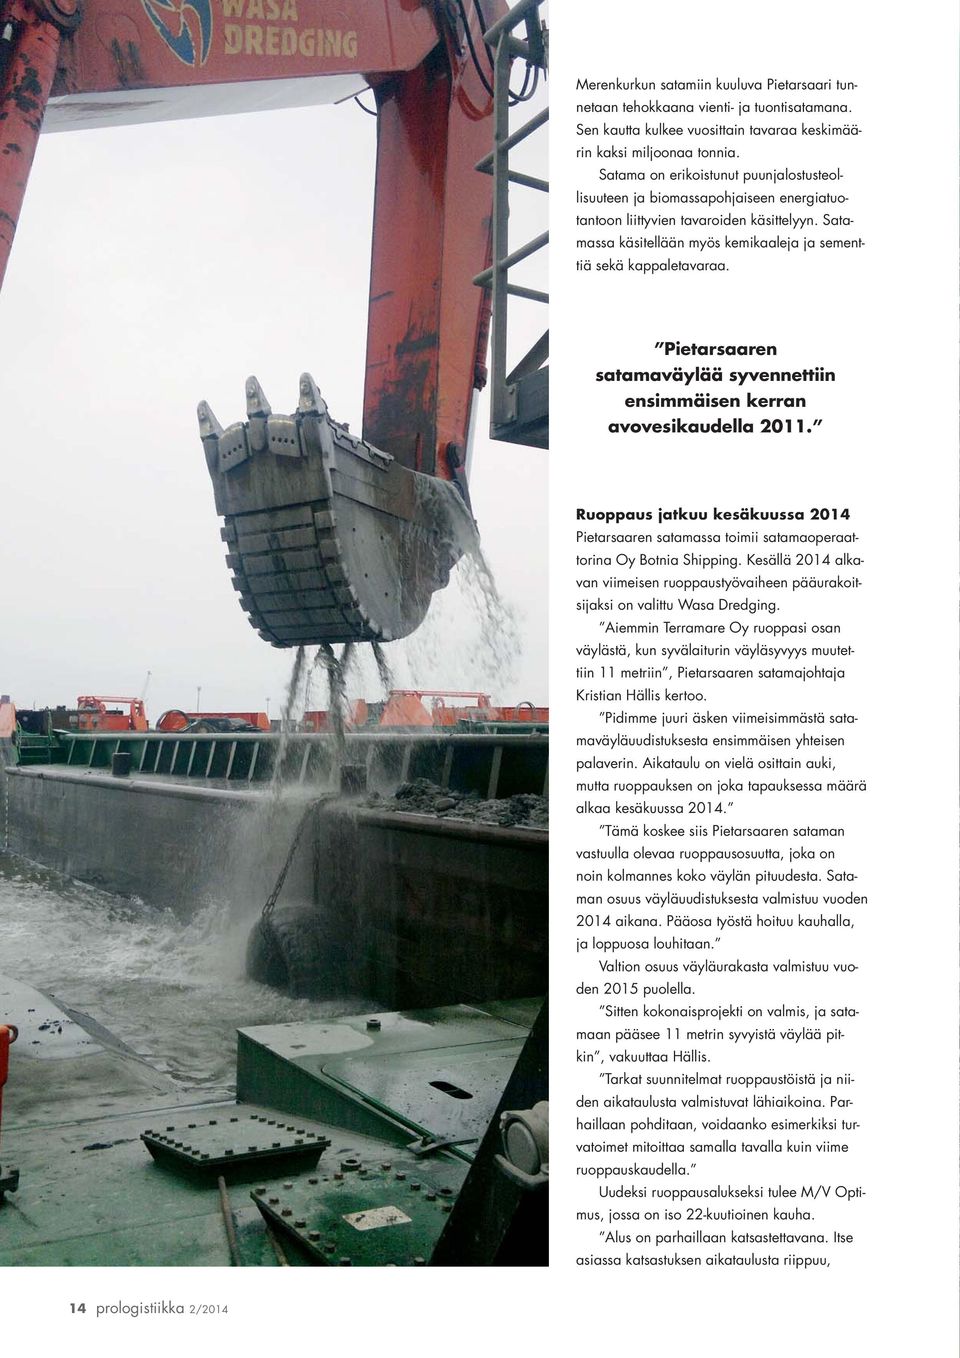 Pietarsaaren satamaväylää syvennettiin ensimmäisen kerran avovesikaudella 2011. Ruoppaus jatkuu kesäkuussa 2014 Pietarsaaren satamassa toimii satamaoperaattorina Oy Botnia Shipping.